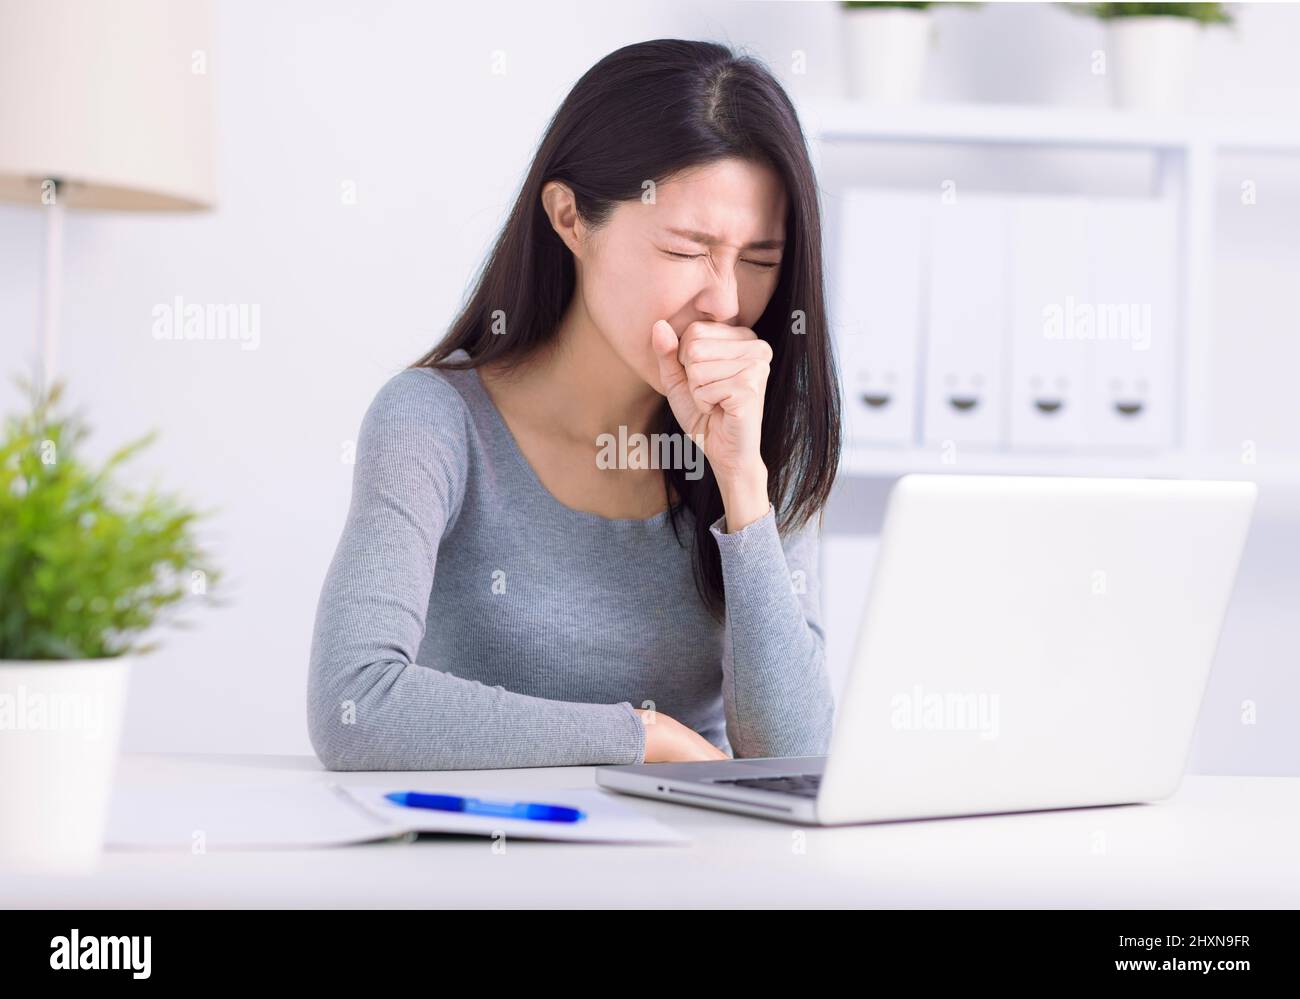 Une jeune femme malade qui s'occupe d'un ordinateur portable tousse lutte contre le coronavirus ou la grippe sur le lieu de travail Banque D'Images